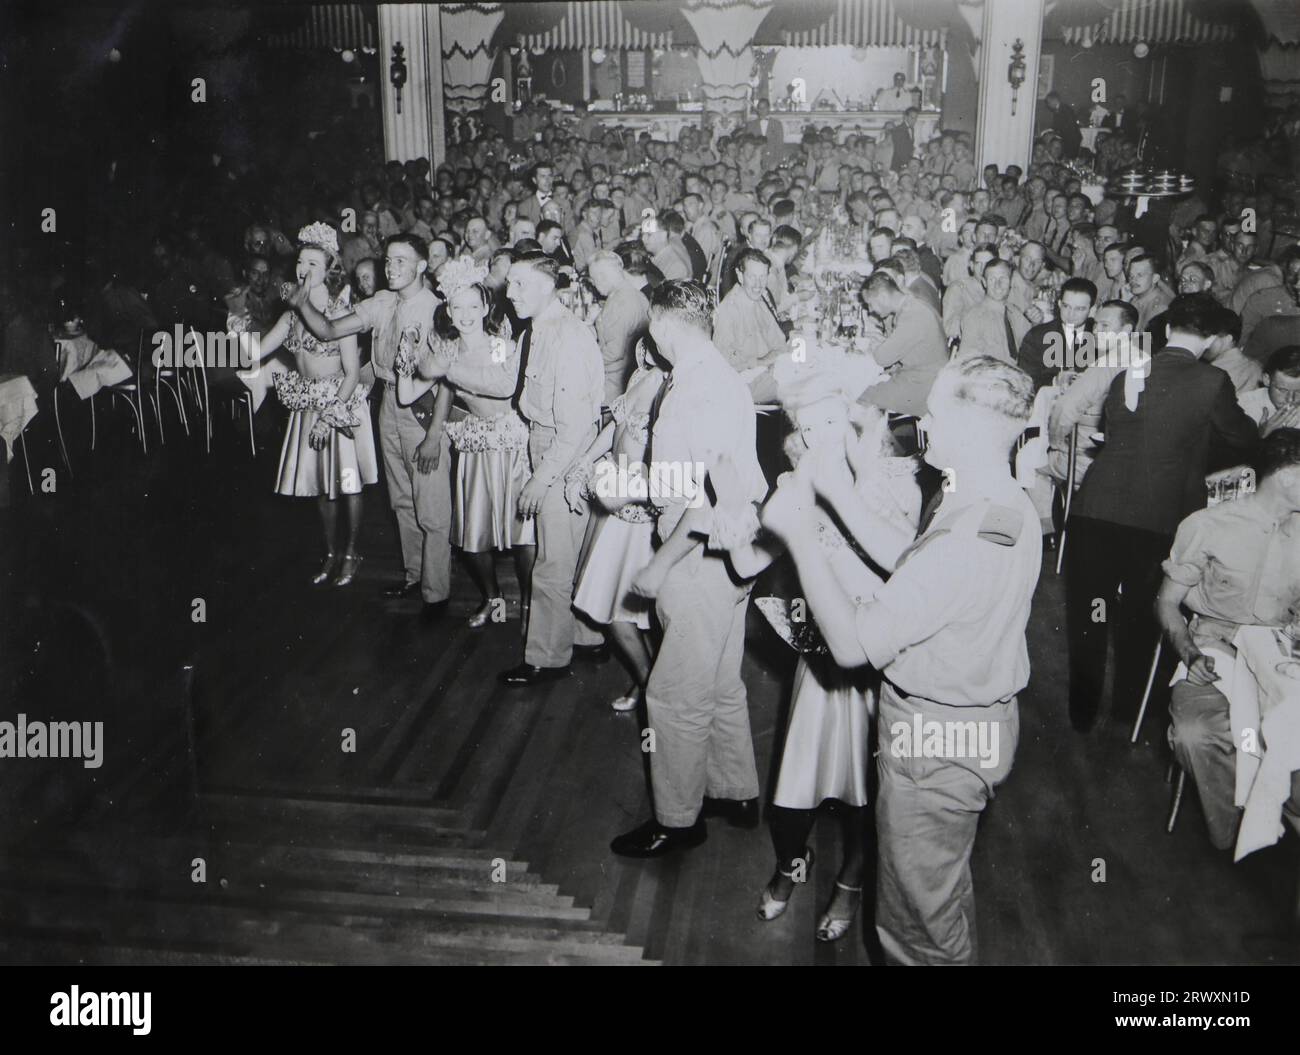 Lambeth Walk im Billy Rosie's Diamond Horseshoe Nightclub in New York. Seltenes Foto: Aus einer Sammlung eines unbekannten britischen Soldaten über die No. 1 Composite Demonstration, AA Battery, Tour durch die USA, vom 11. Juli 1943. Dies ist eines von mehr als hundert Bildern in der Sammlung, die im Durchschnitt etwa 4 x 3 Zoll groß waren. Stockfoto